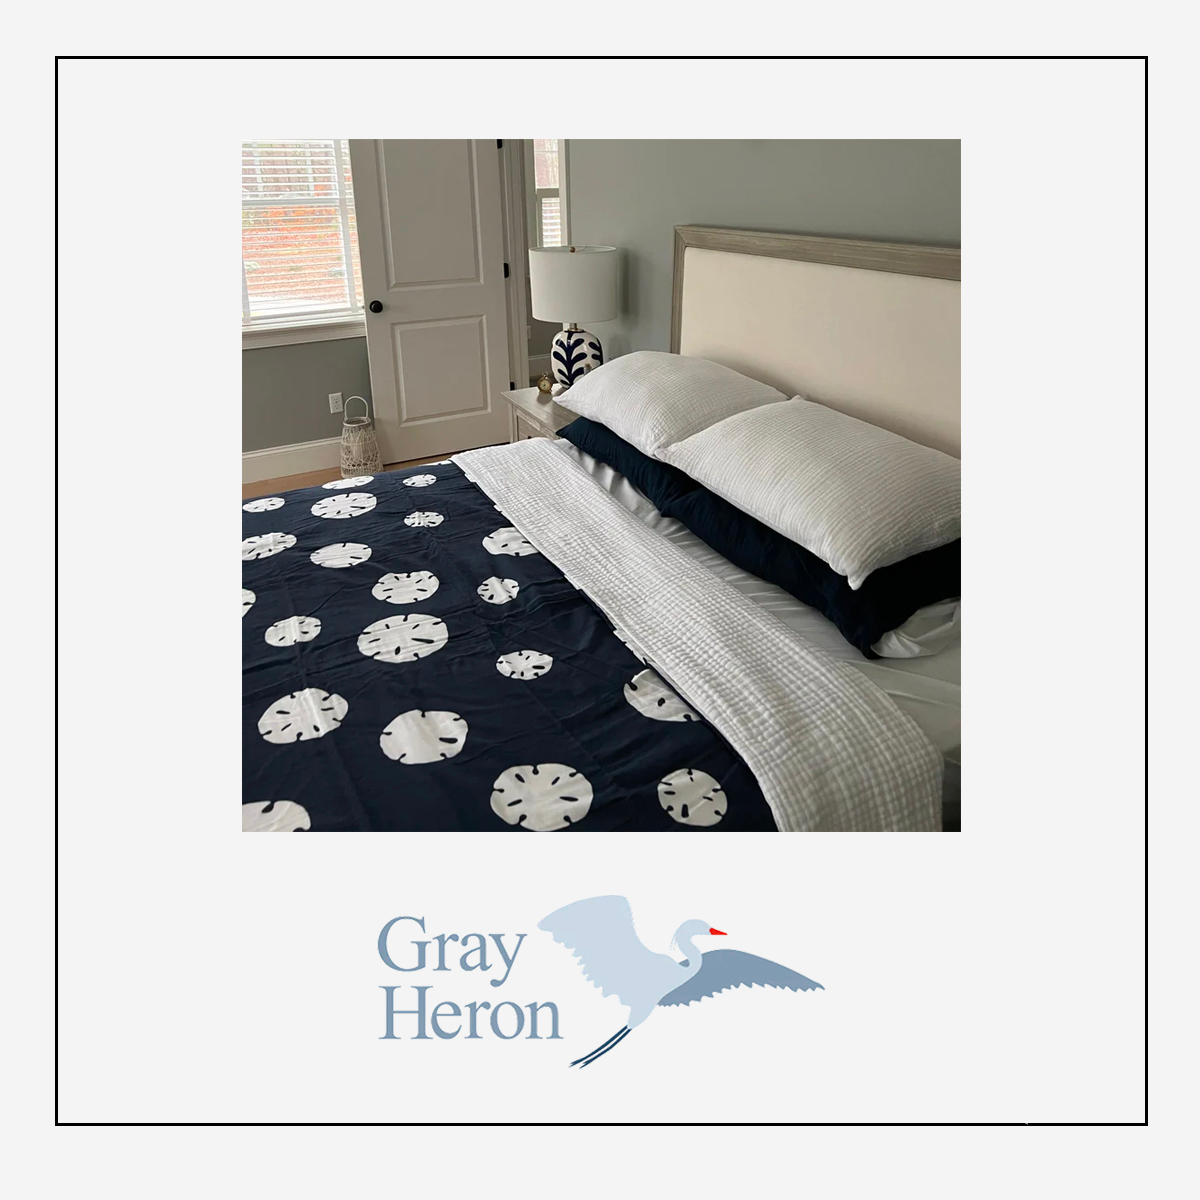 Gray Heron Brand